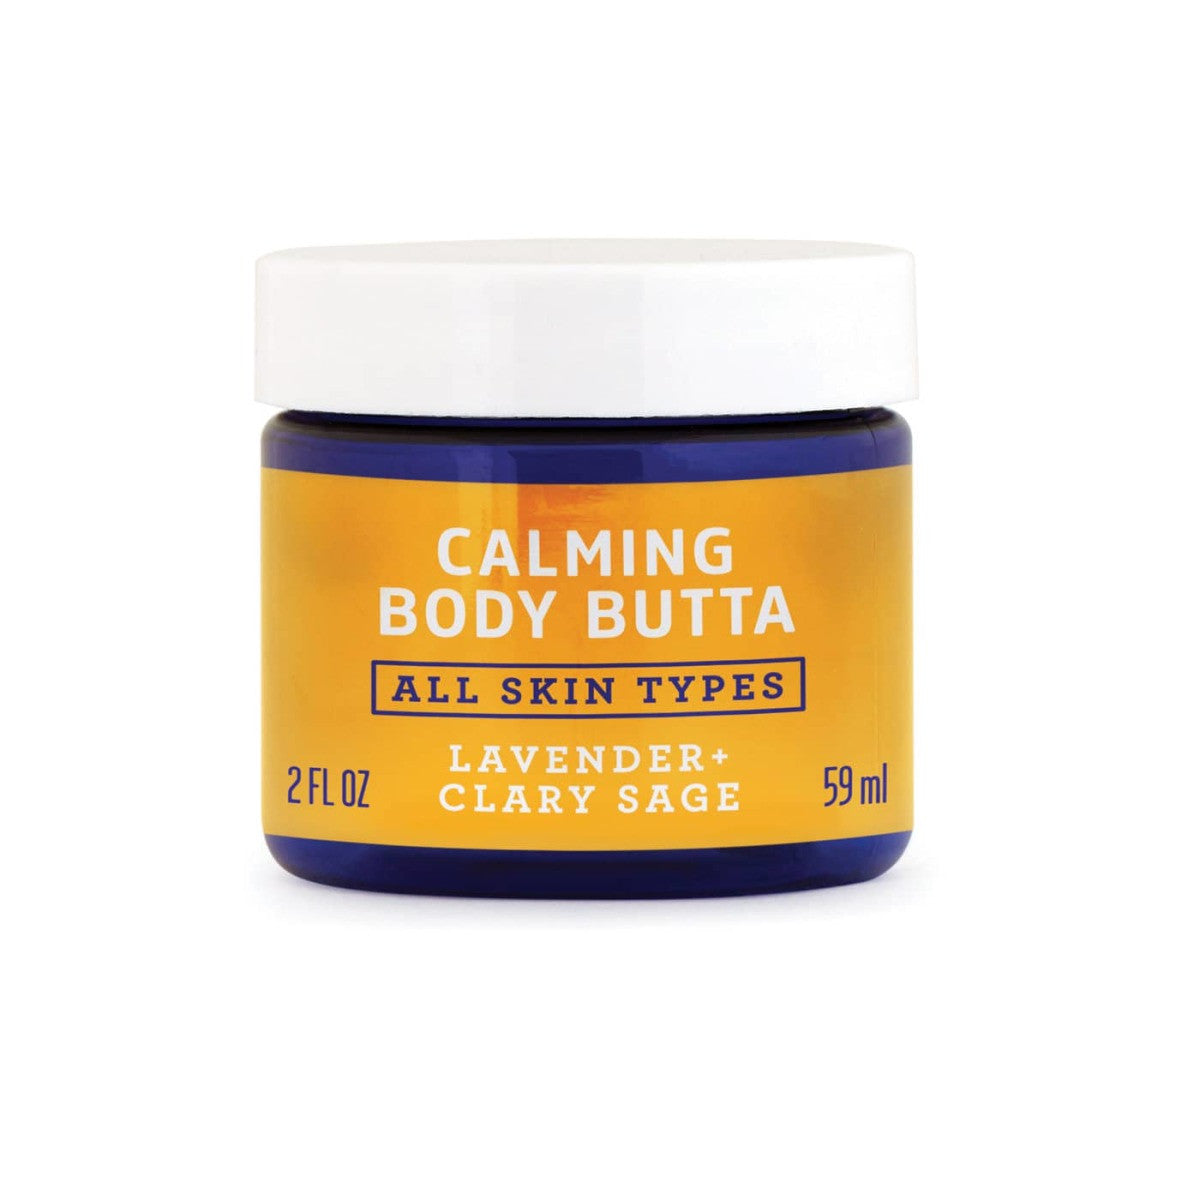 Calming Body Butta 2 Oz Fatco Skincare Products 4748